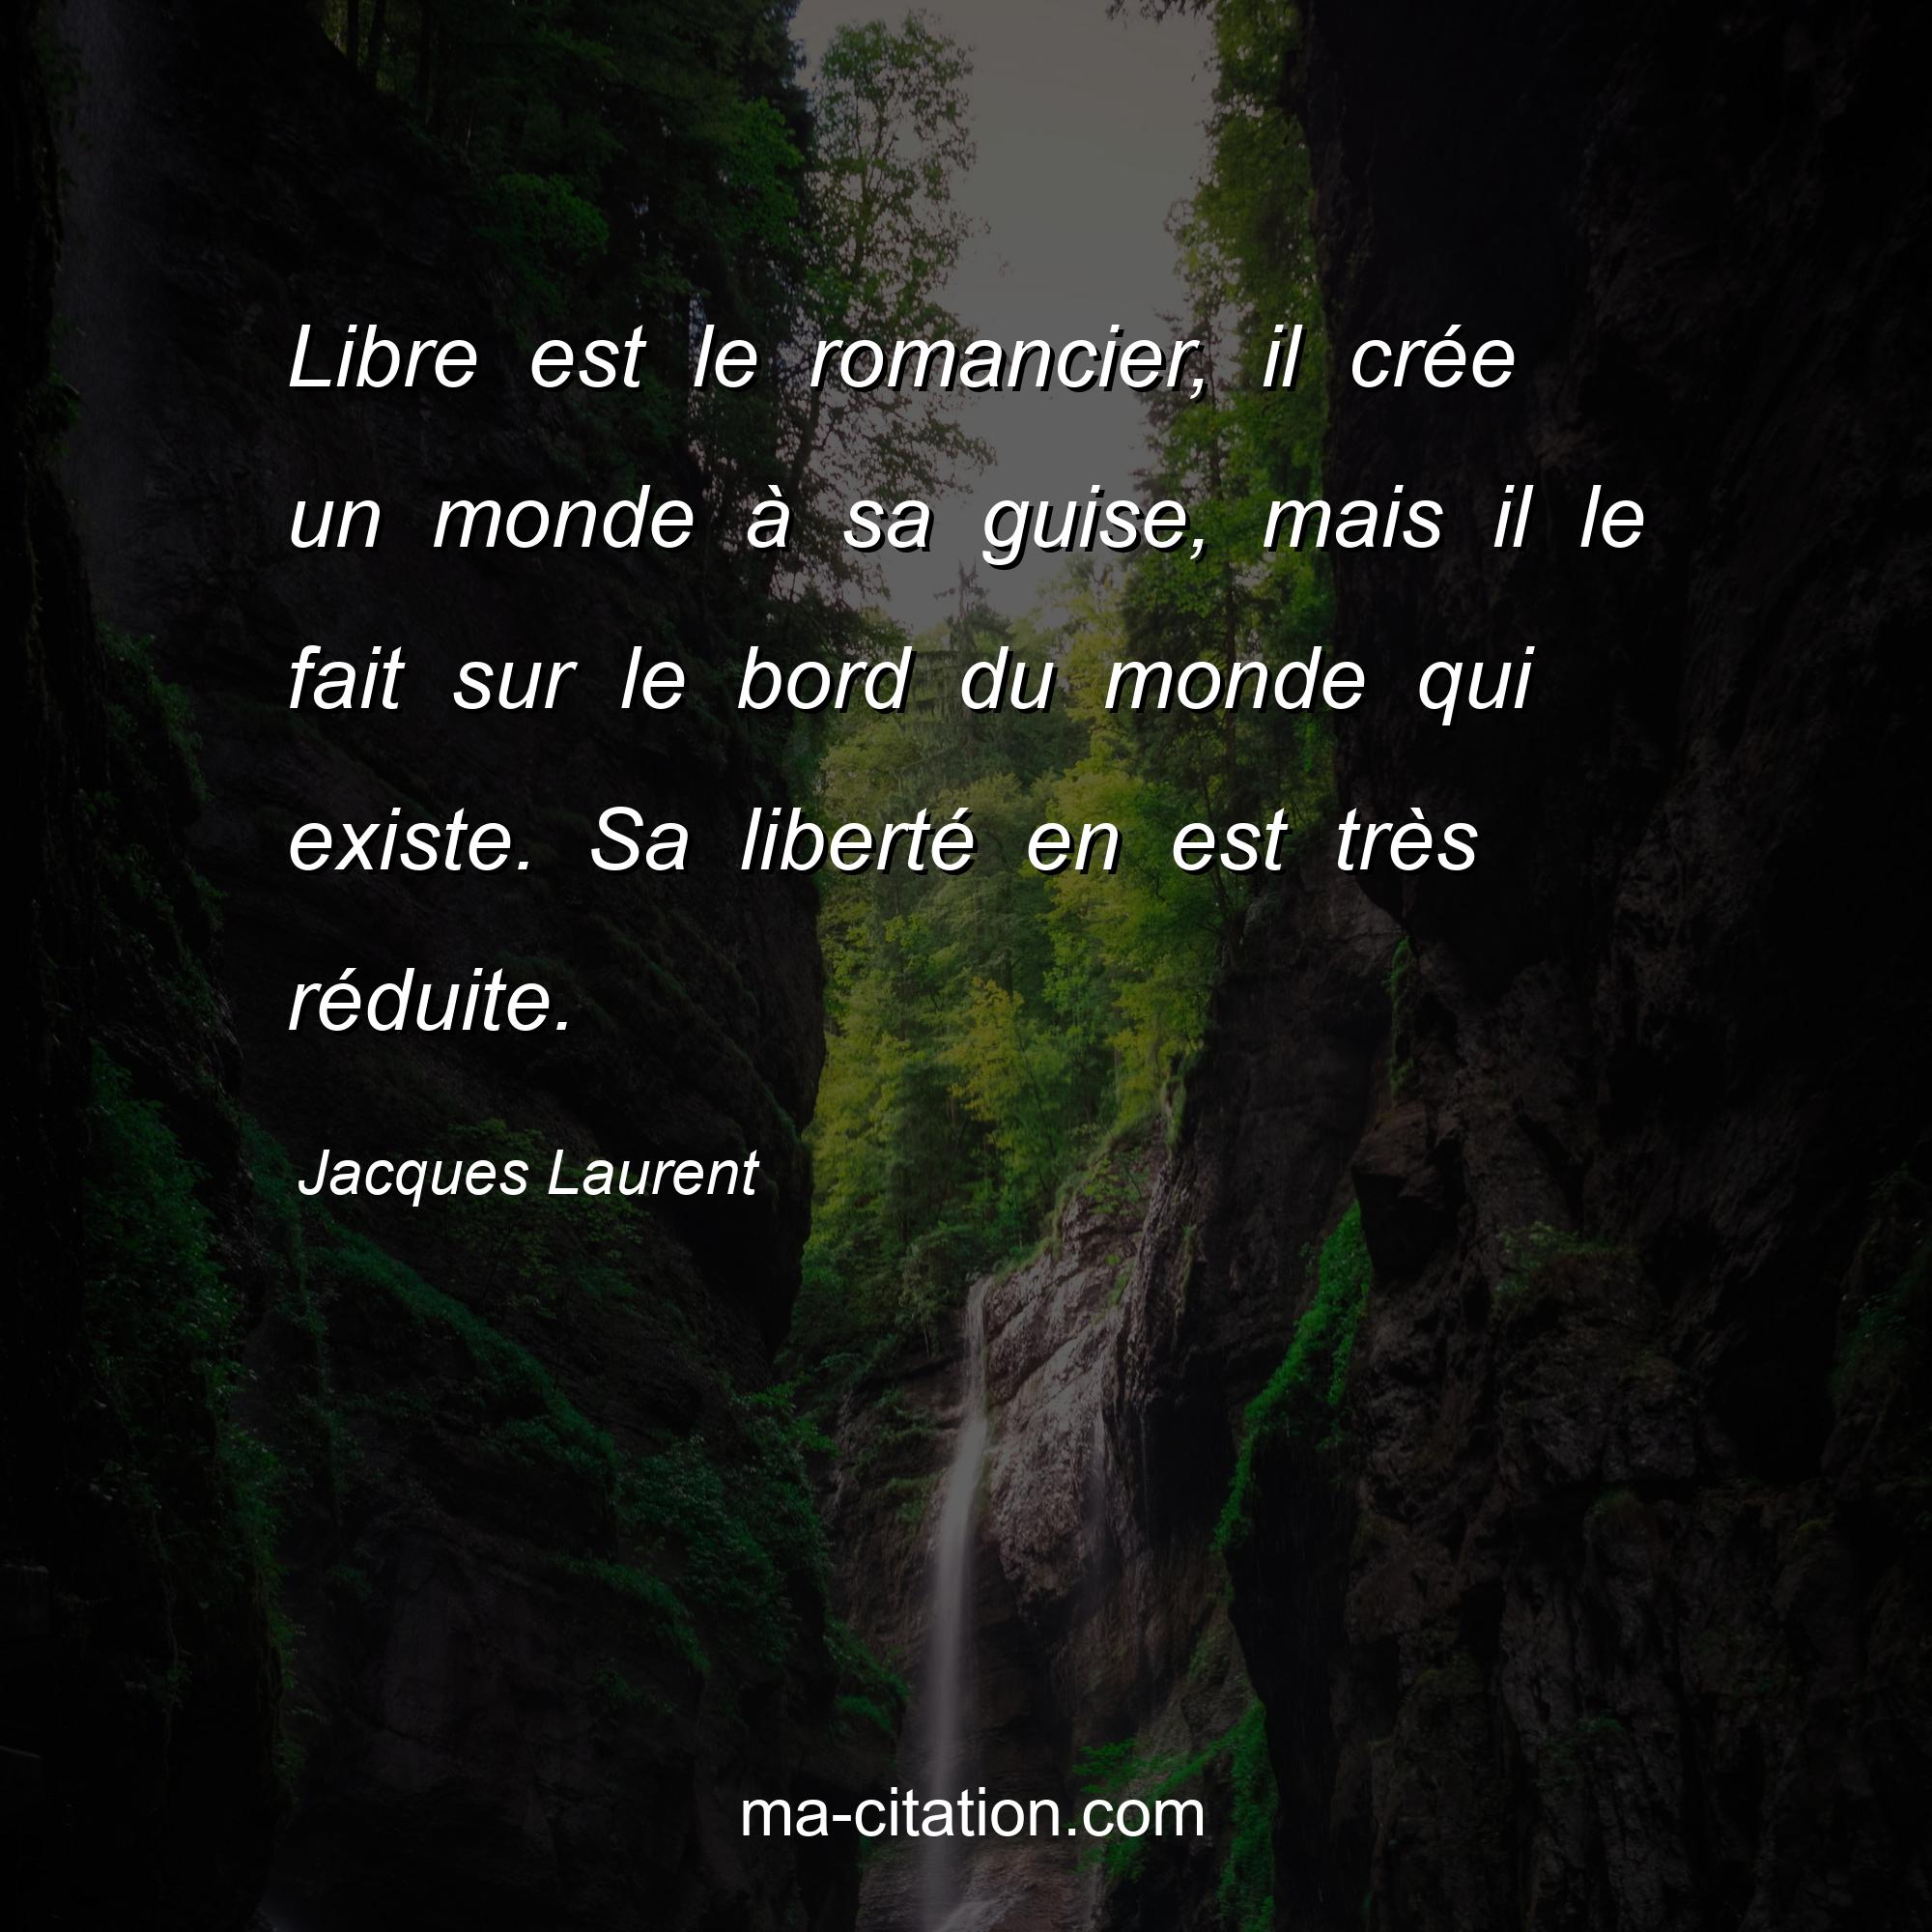 Jacques Laurent : Libre est le romancier, il crée un monde à sa guise, mais il le fait sur le bord du monde qui existe. Sa liberté en est très réduite.